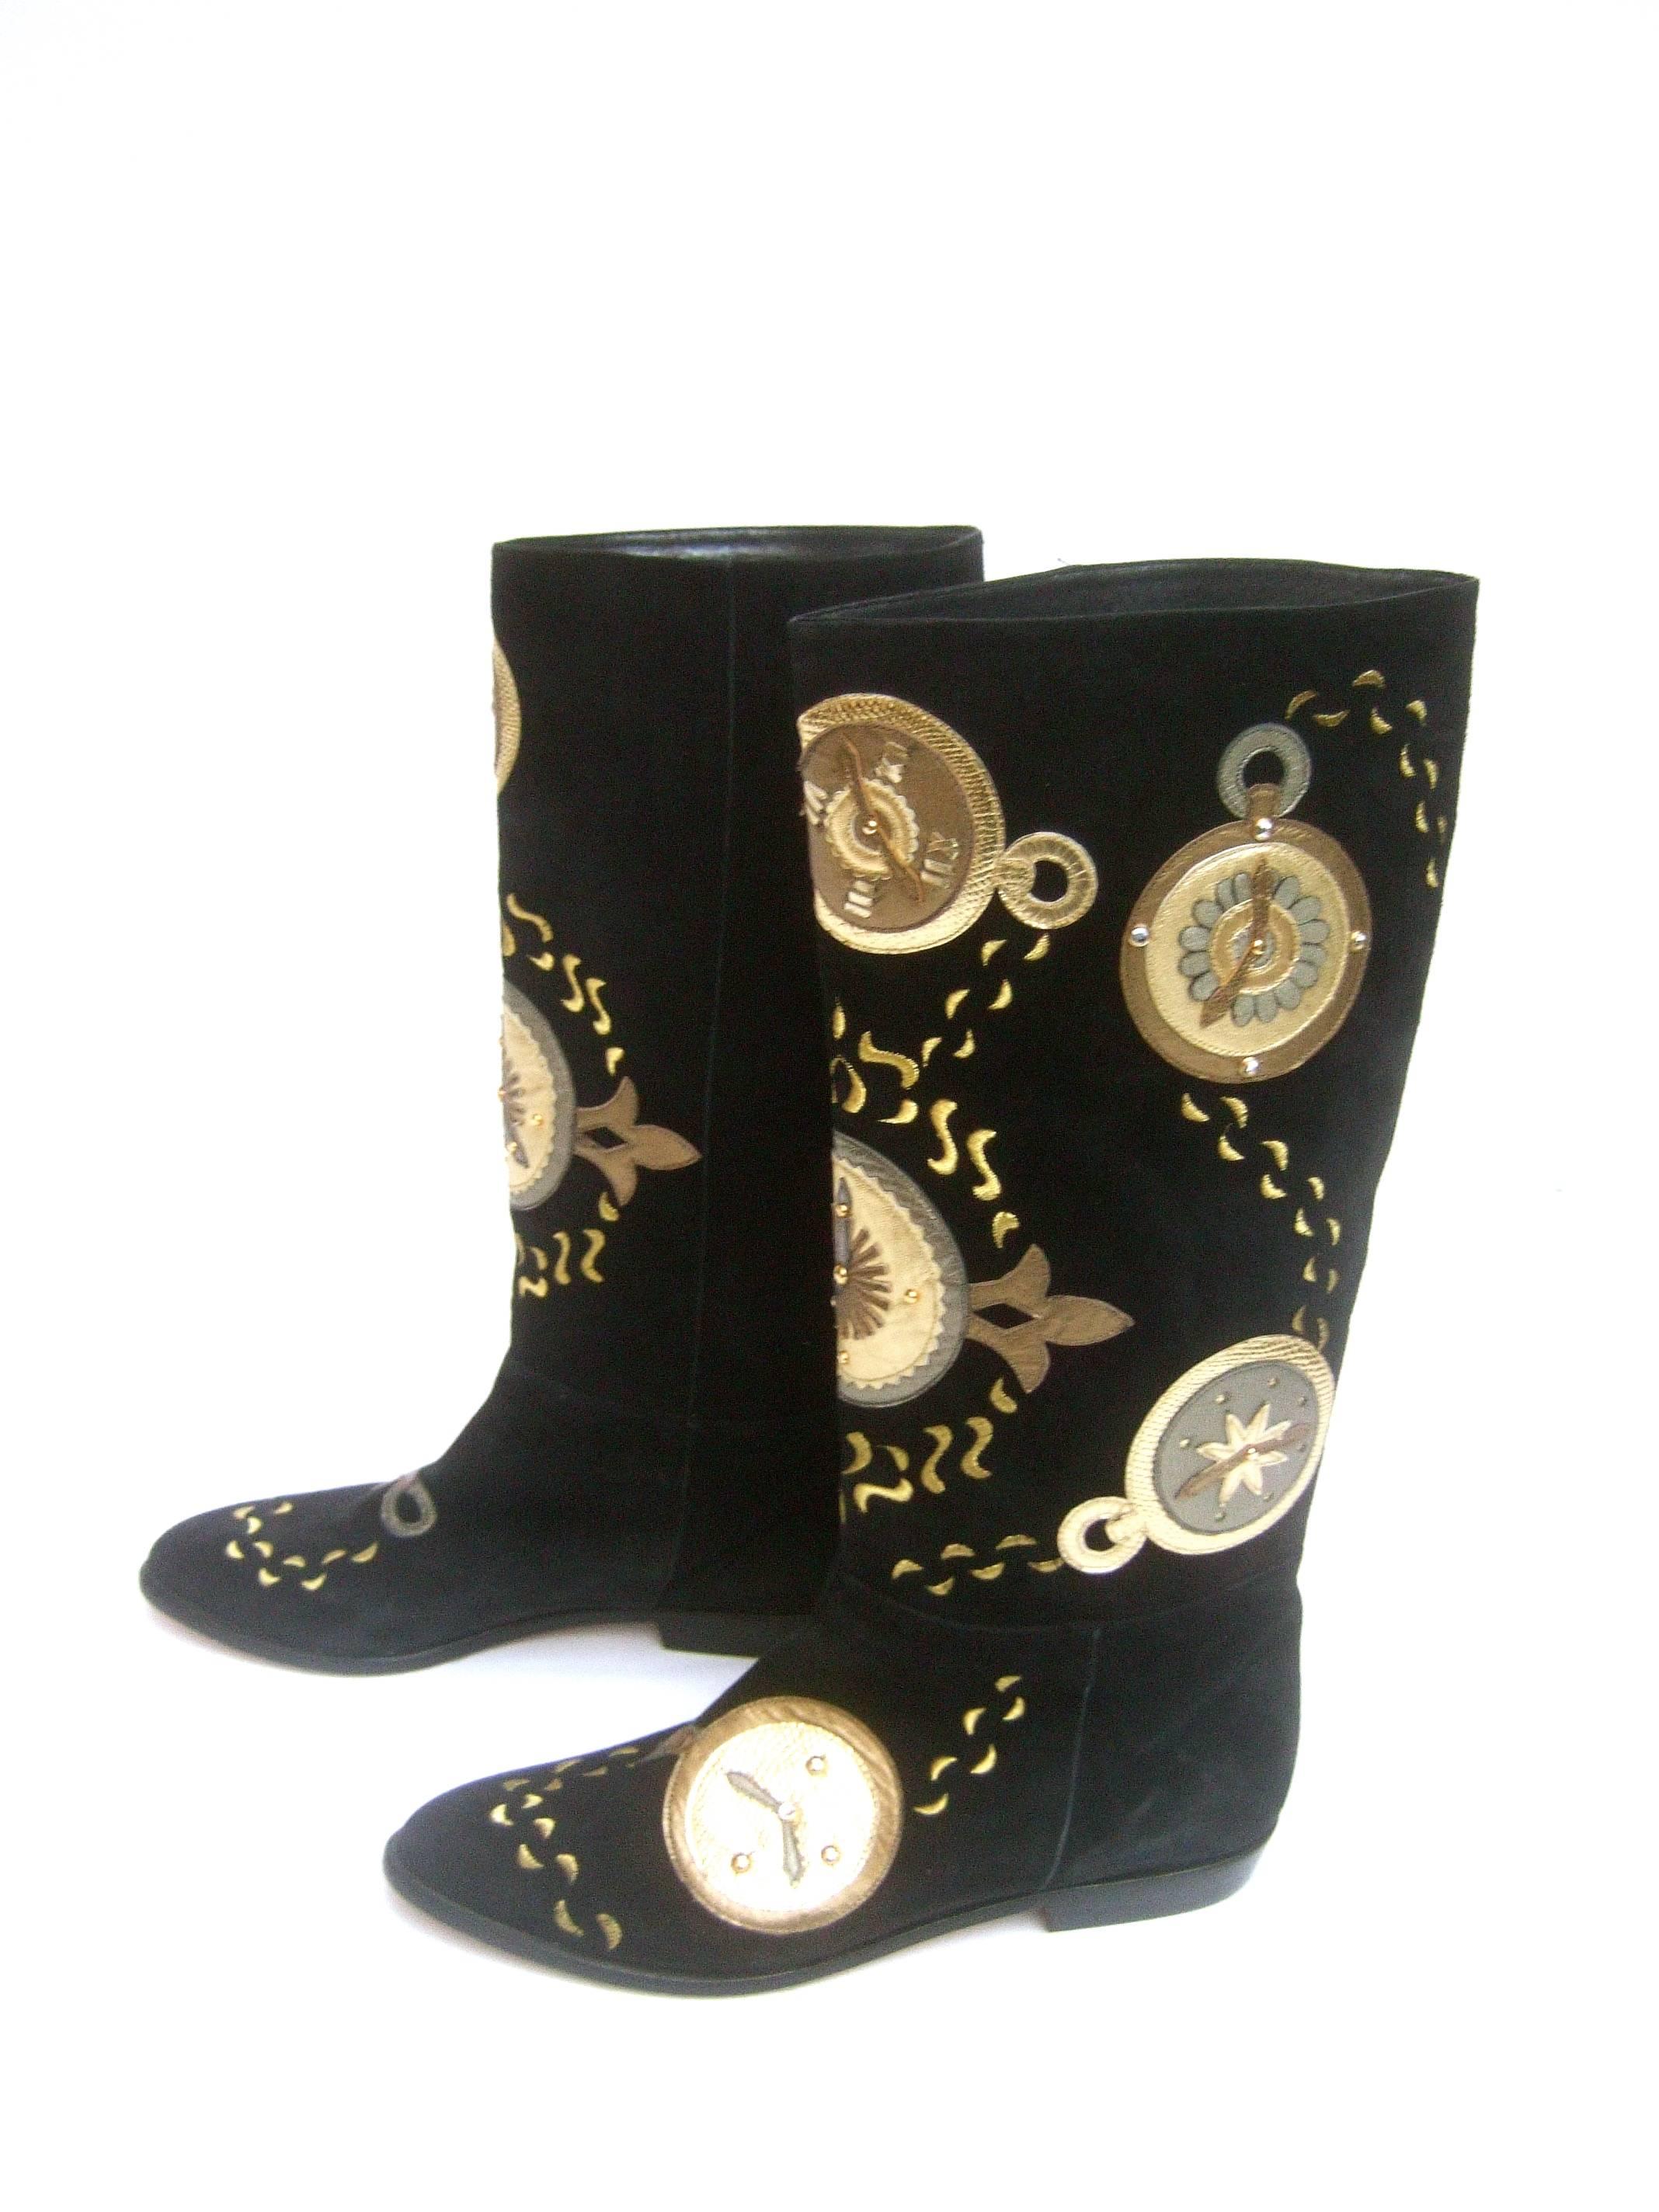 Bottes en daim noir à thème d'horloge métallique par Zalo Taille 9 M
Les bottes uniques en peluche en daim noir sont conçues
avec une série de cadrans d'horloge en applique métallique 

Les garde-temps en applique or et bronze sont
rehaussé